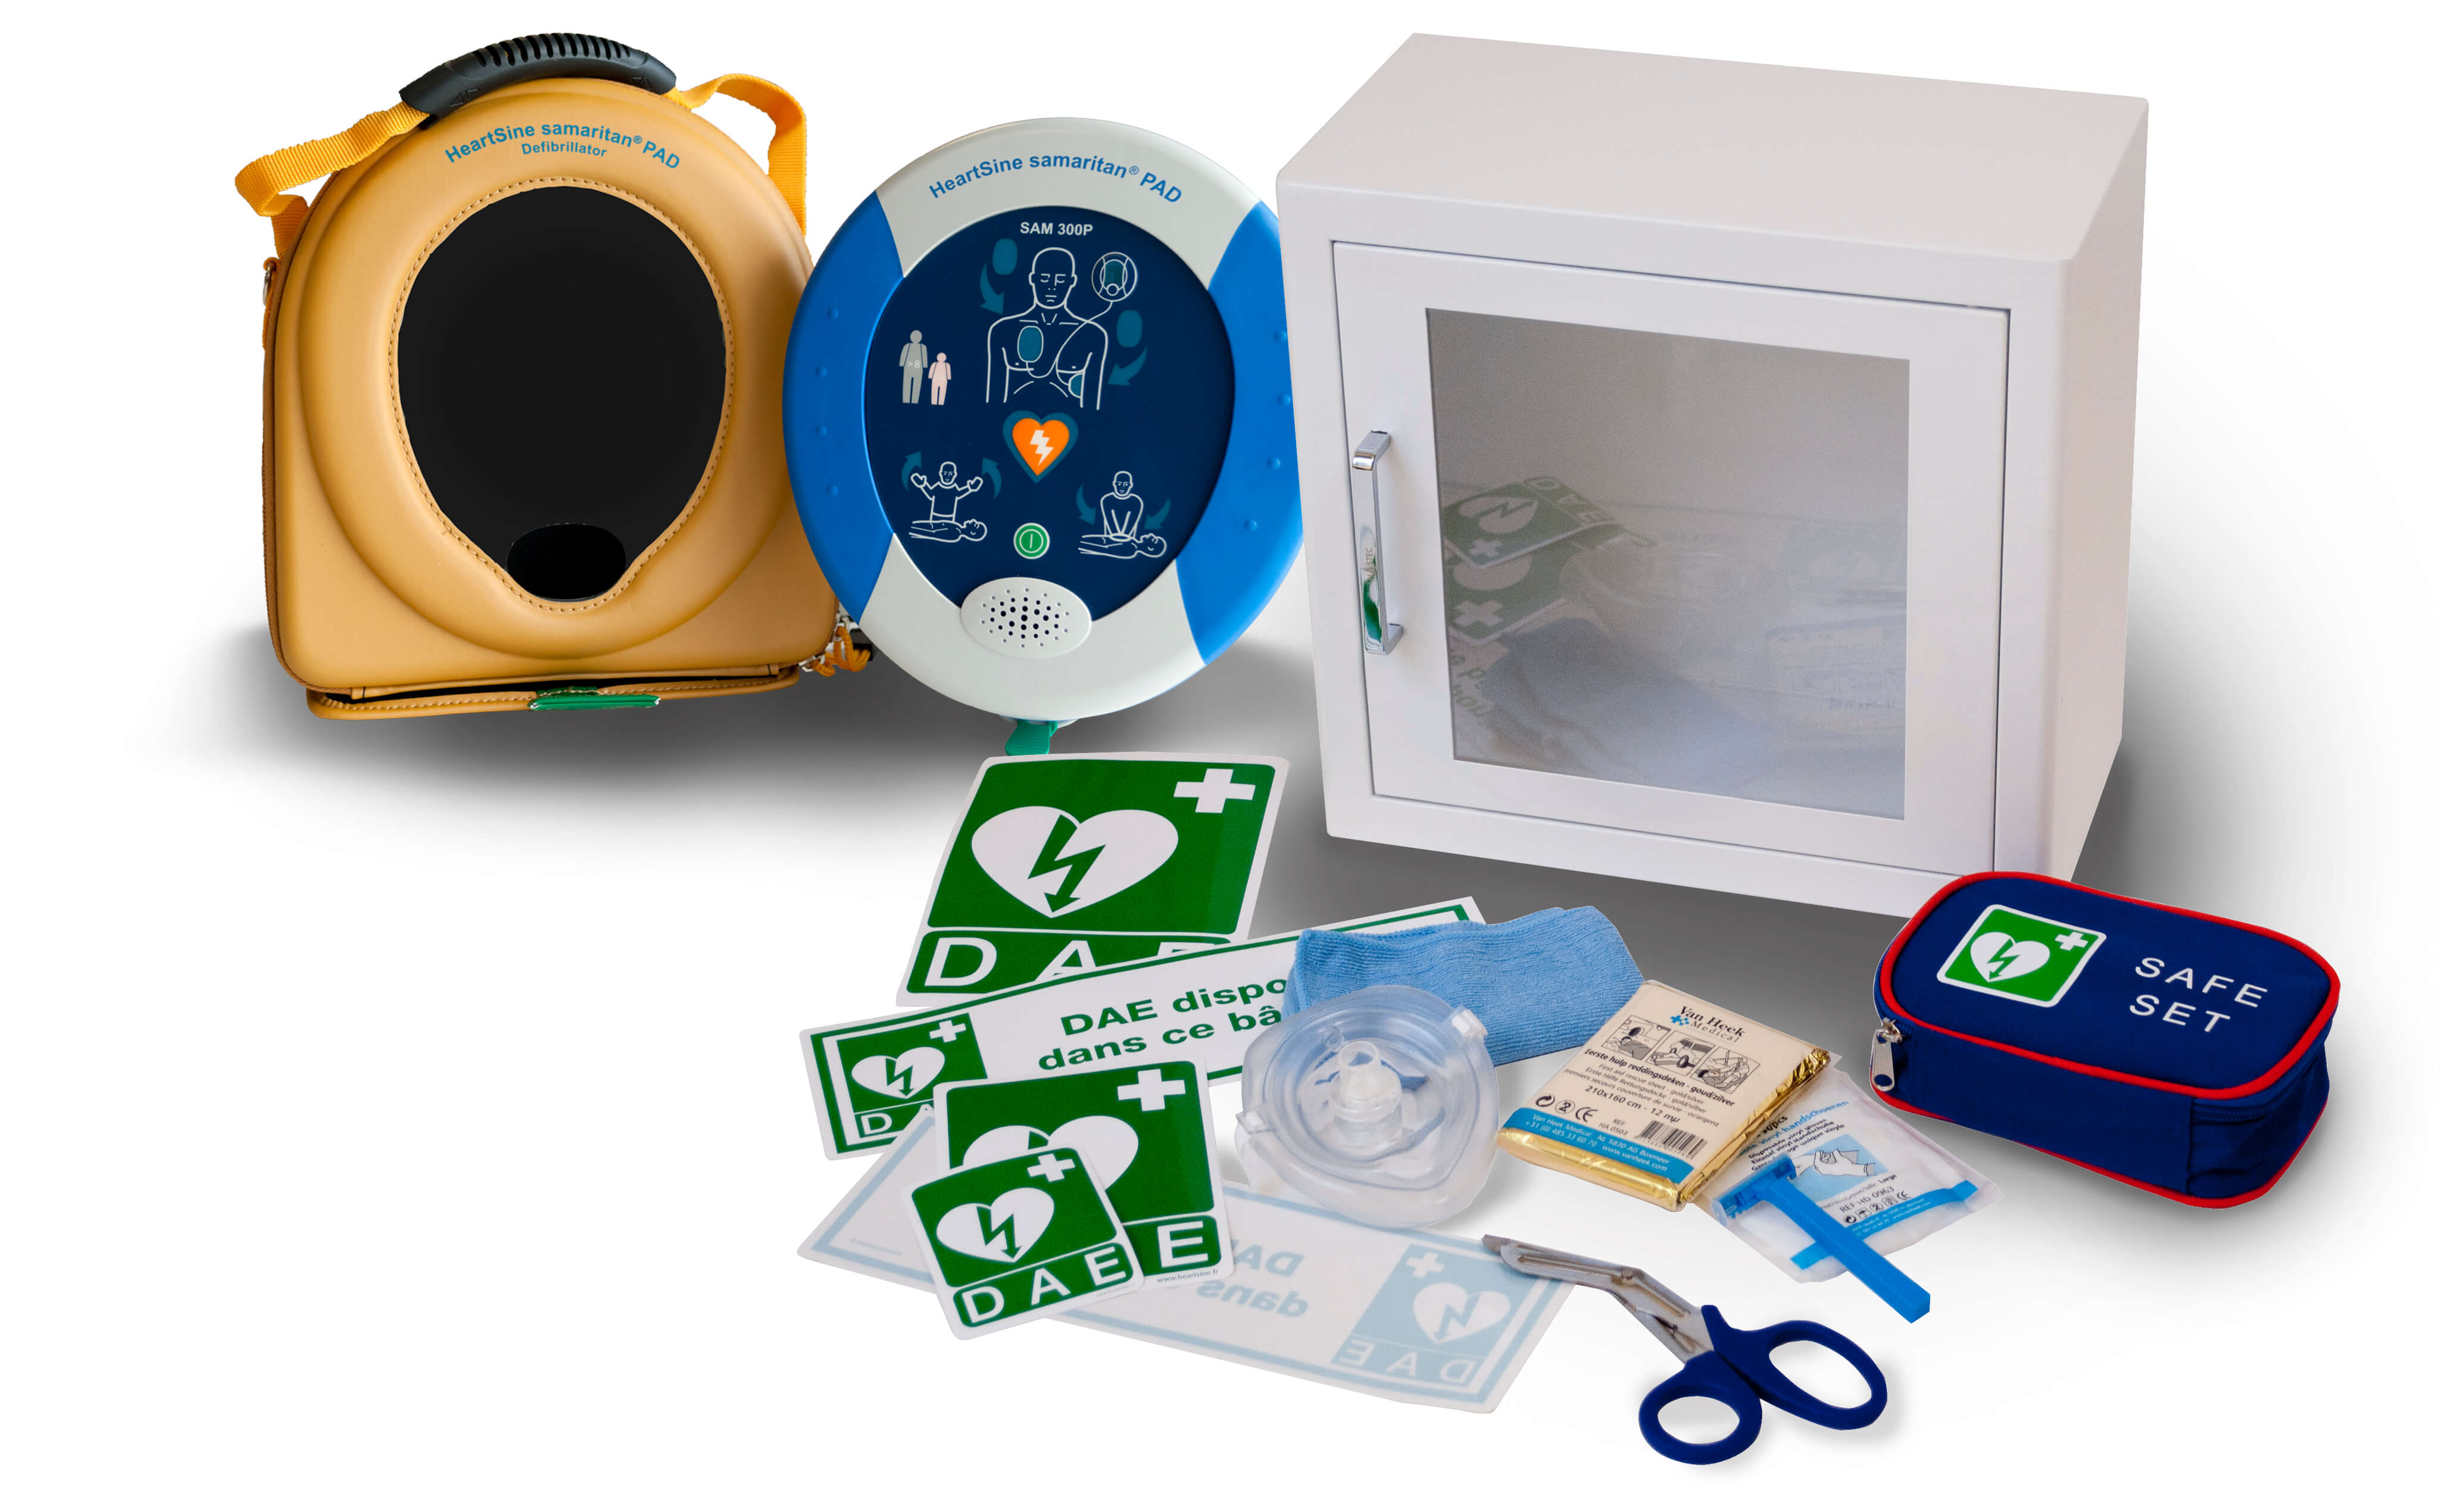 Pack dfibrillateur automatique HeartSine avec armoire de protection, signalisation, trousse de secours et housse de transport pour le dfibrillateur.